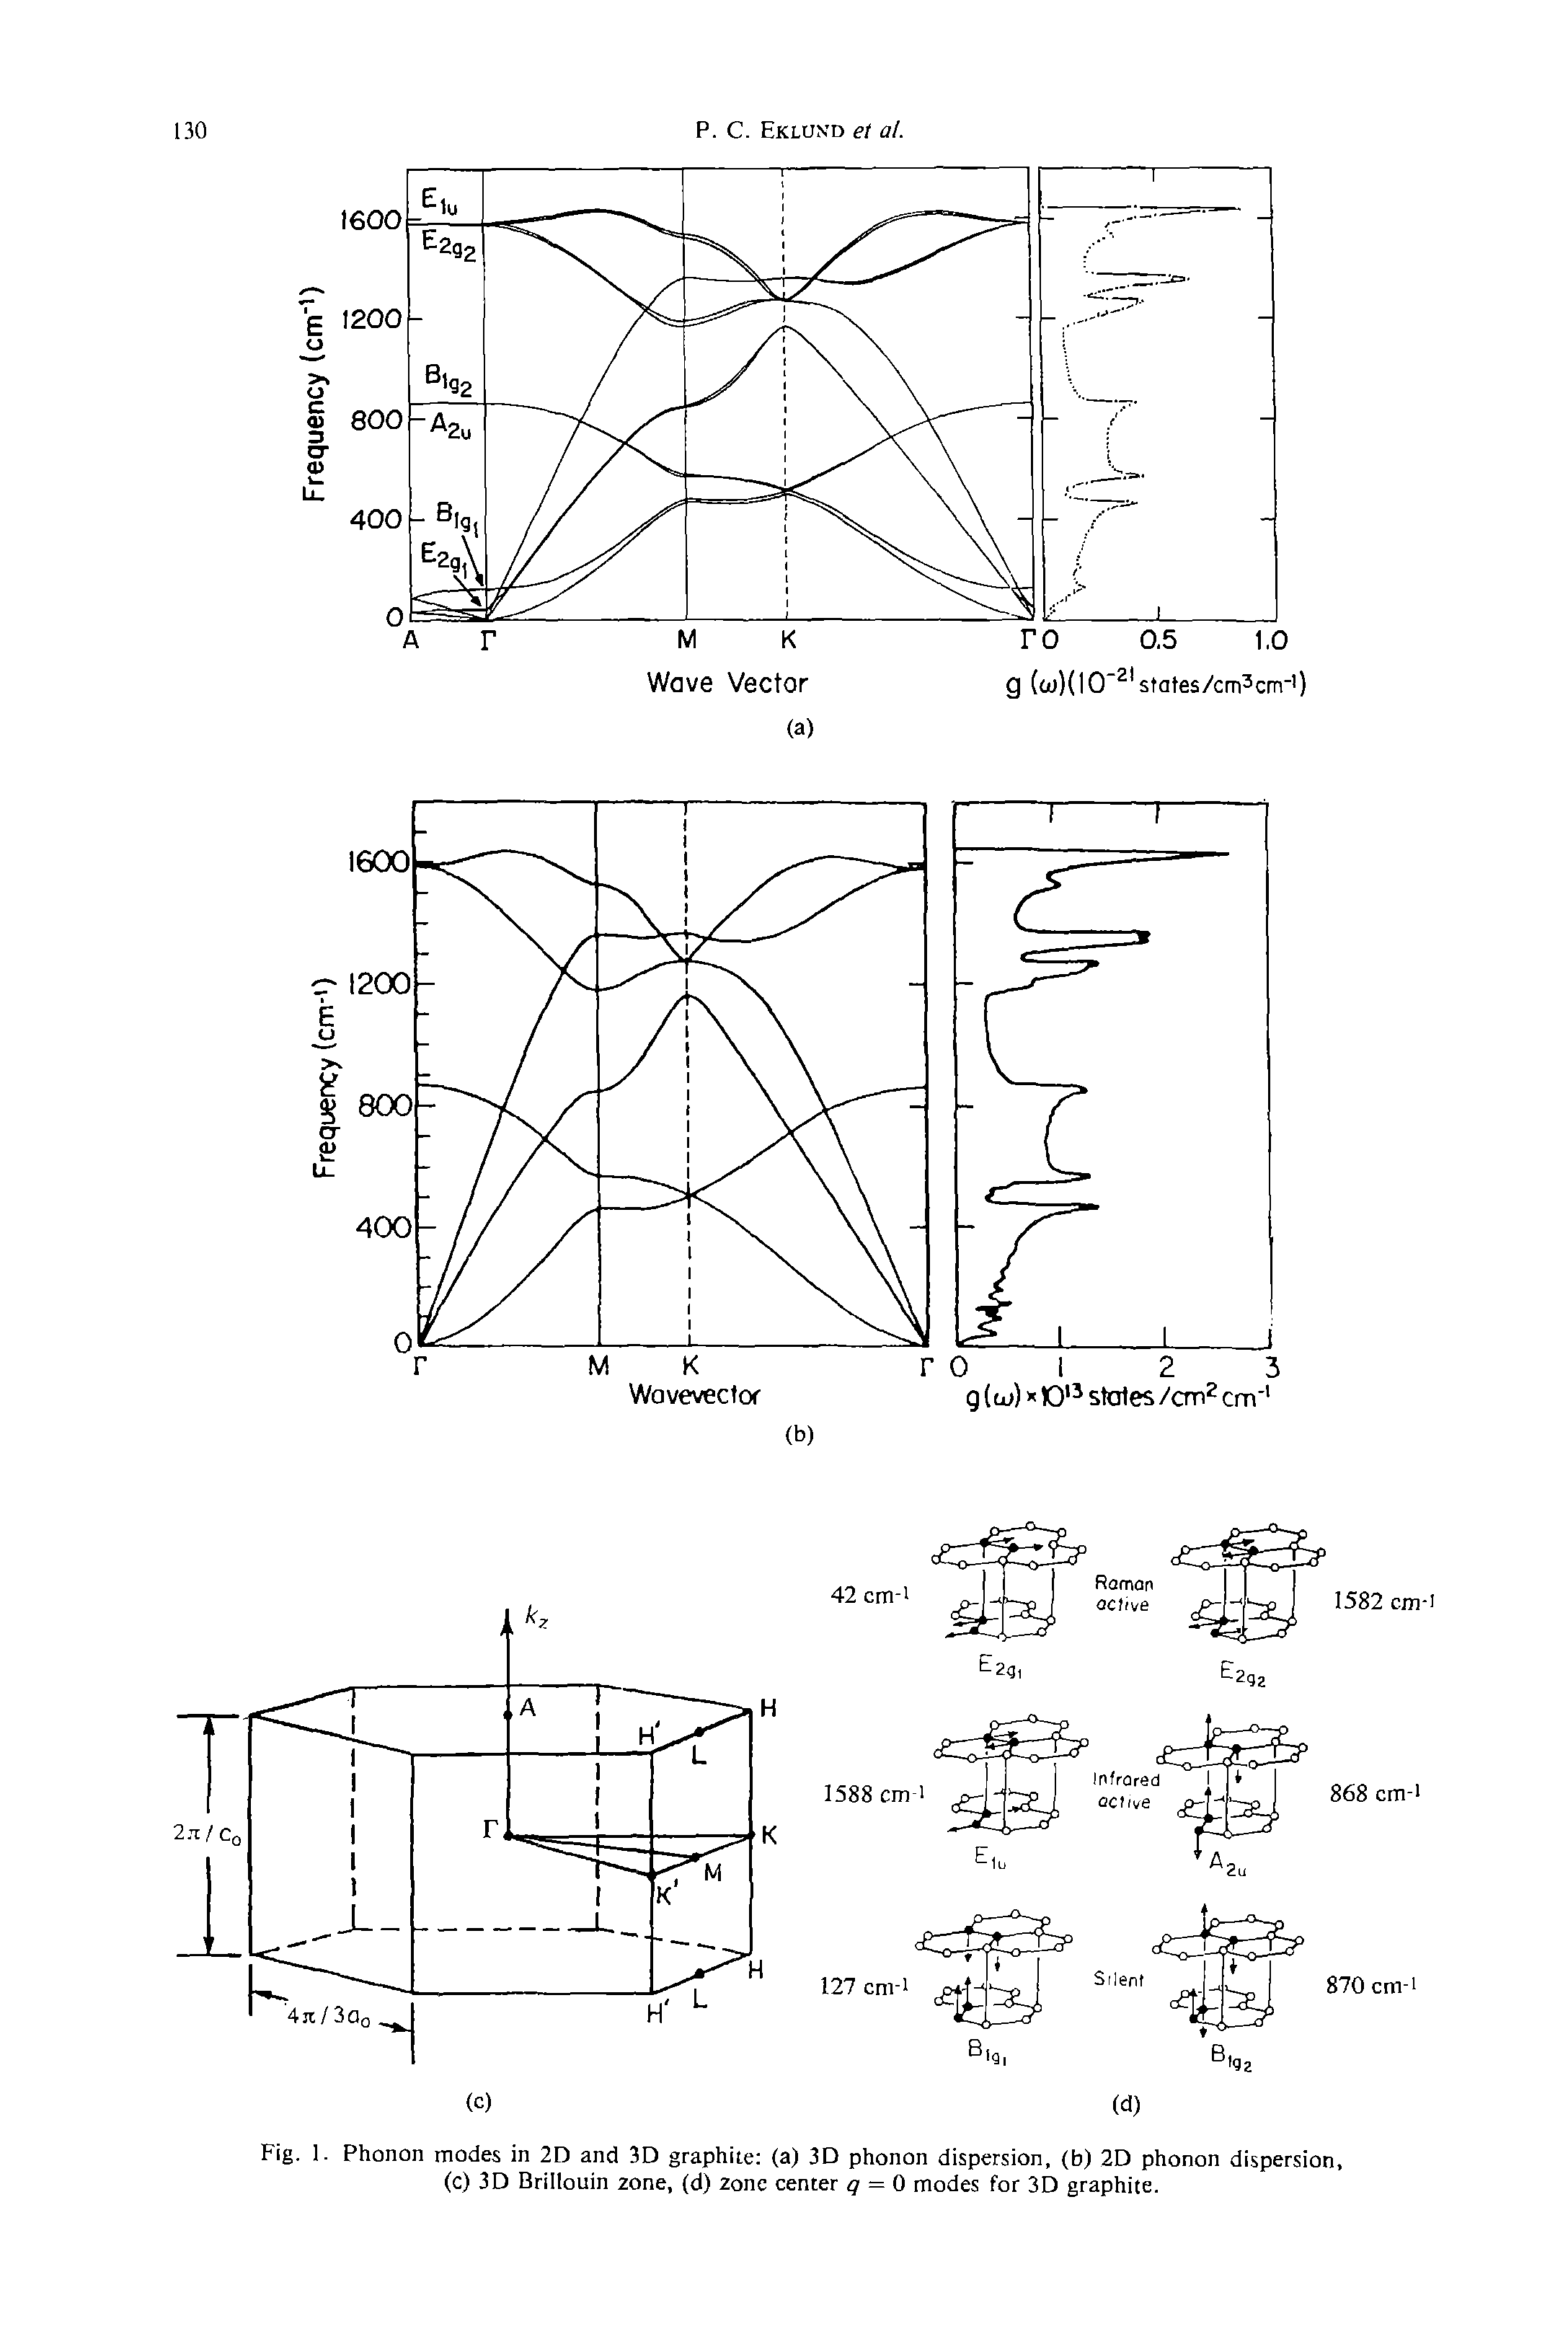 Fig. 1. Phonon modes in 2D and 3D graphite (a) 3D phonon dispersion, (b) 2D phonon dispersion, (c) 3D Brillouin zone, (d) zone center q = 0 modes for 3D graphite.